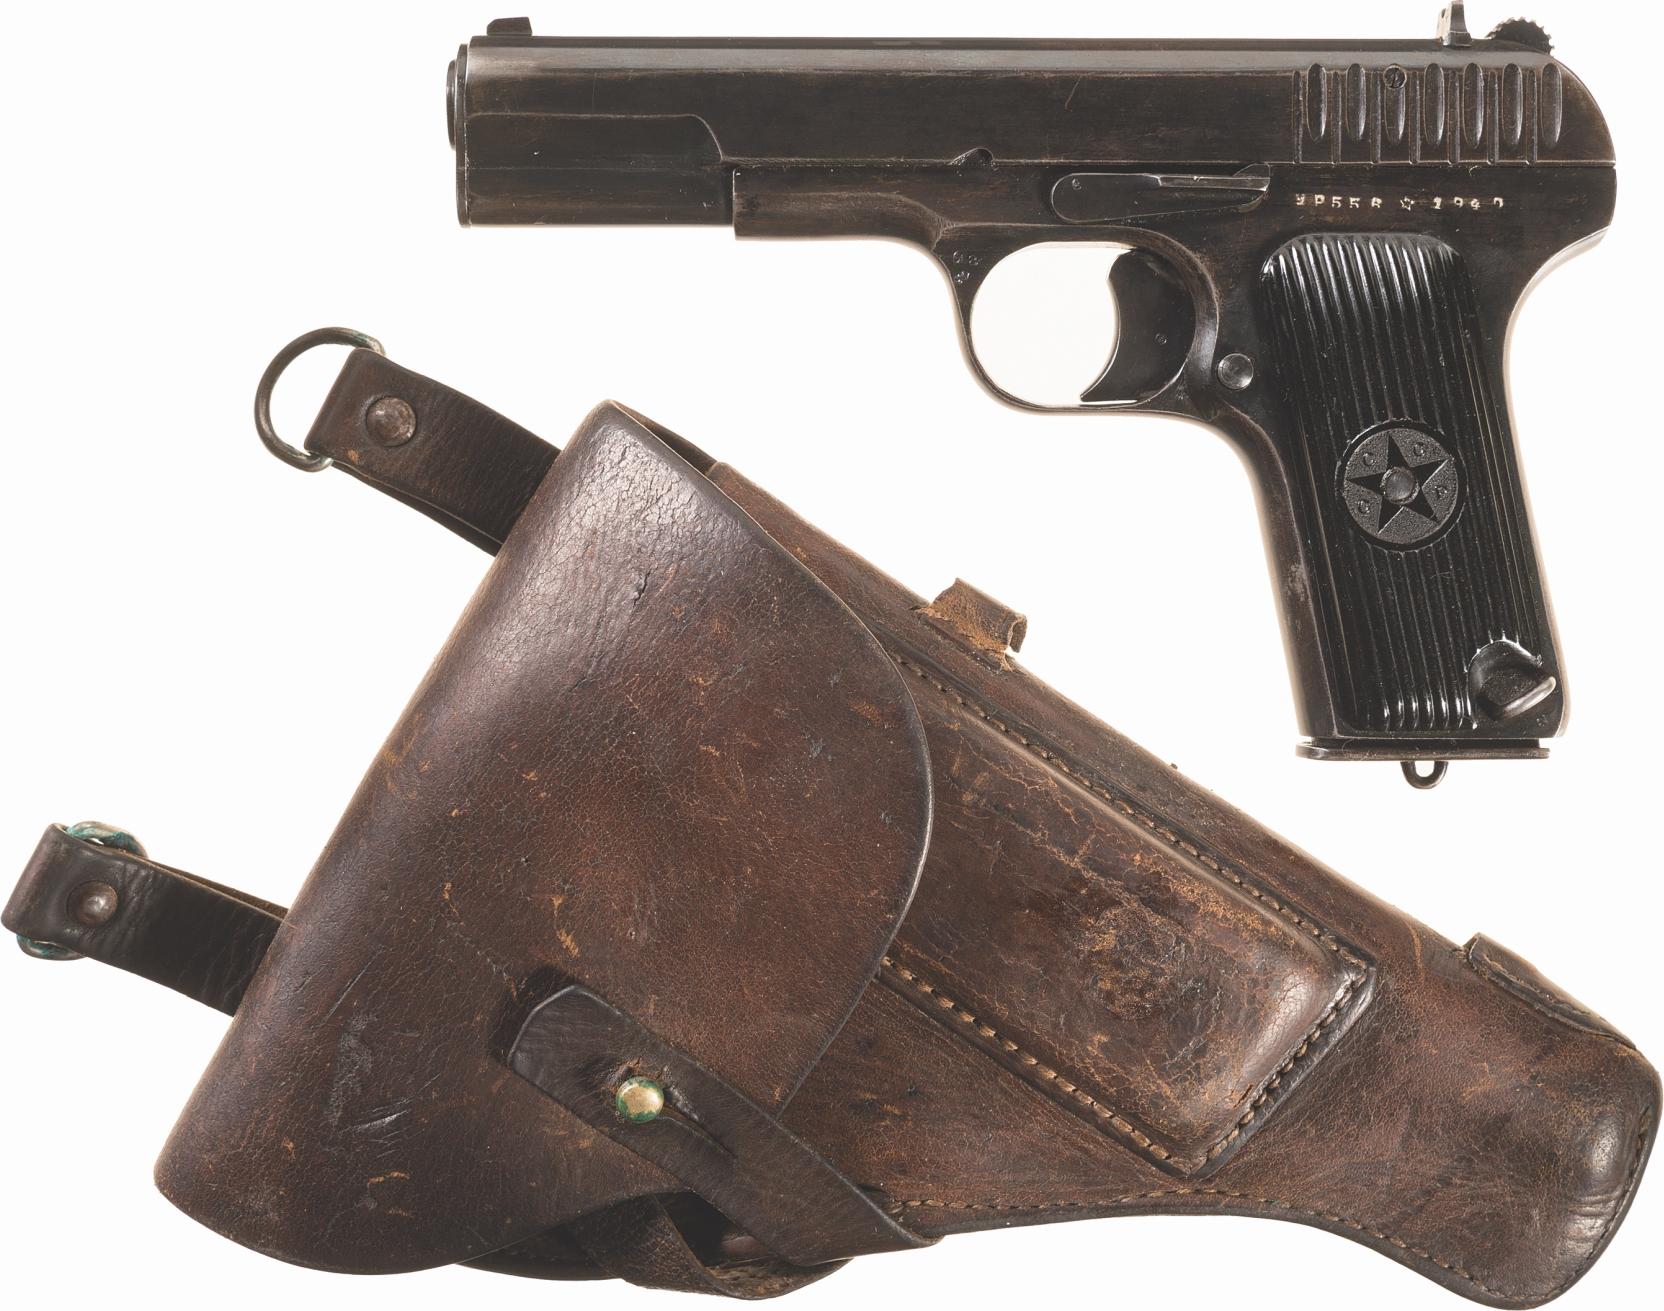 Two Soviet Handguns